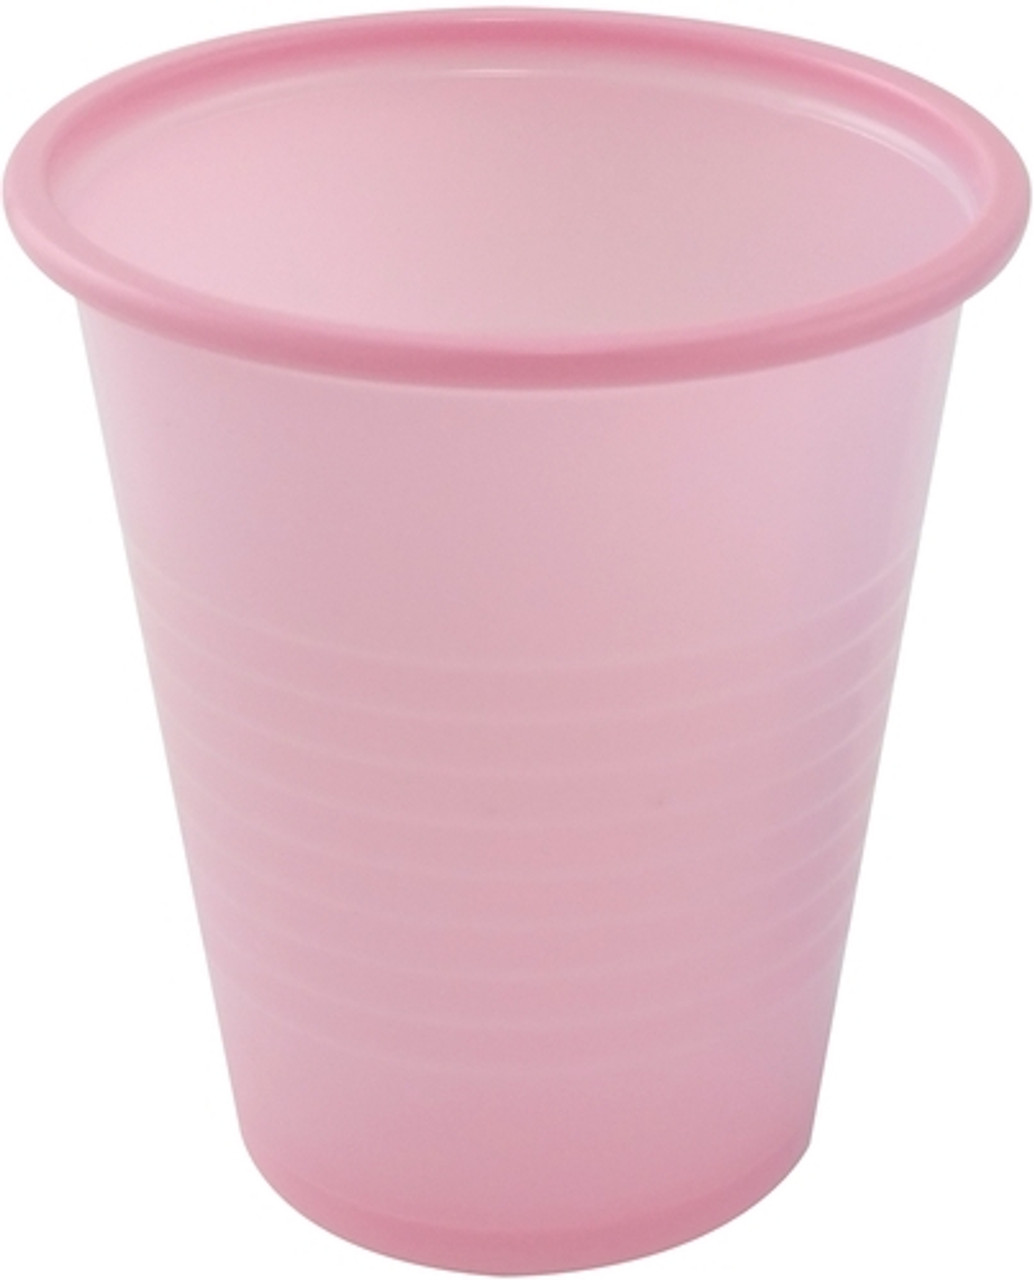 CUP PLASTIC 5oz ROSE CA/1000 001-SC-6210